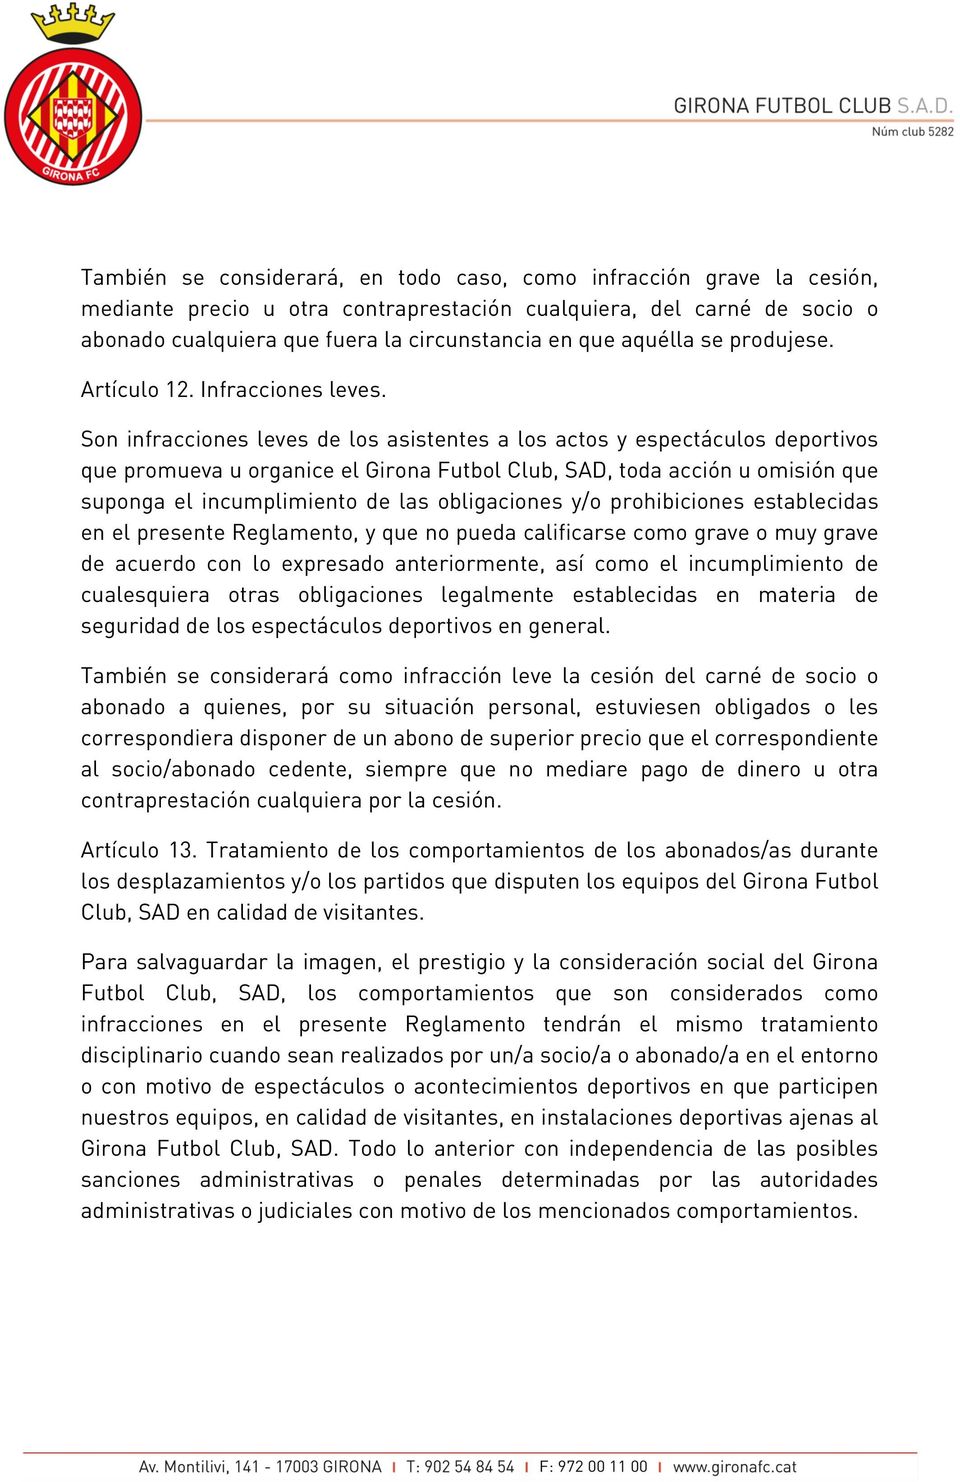 Son infracciones leves de los asistentes a los actos y espectáculos deportivos que promueva u organice el Girona Futbol Club, SAD, toda acción u omisión que suponga el incumplimiento de las